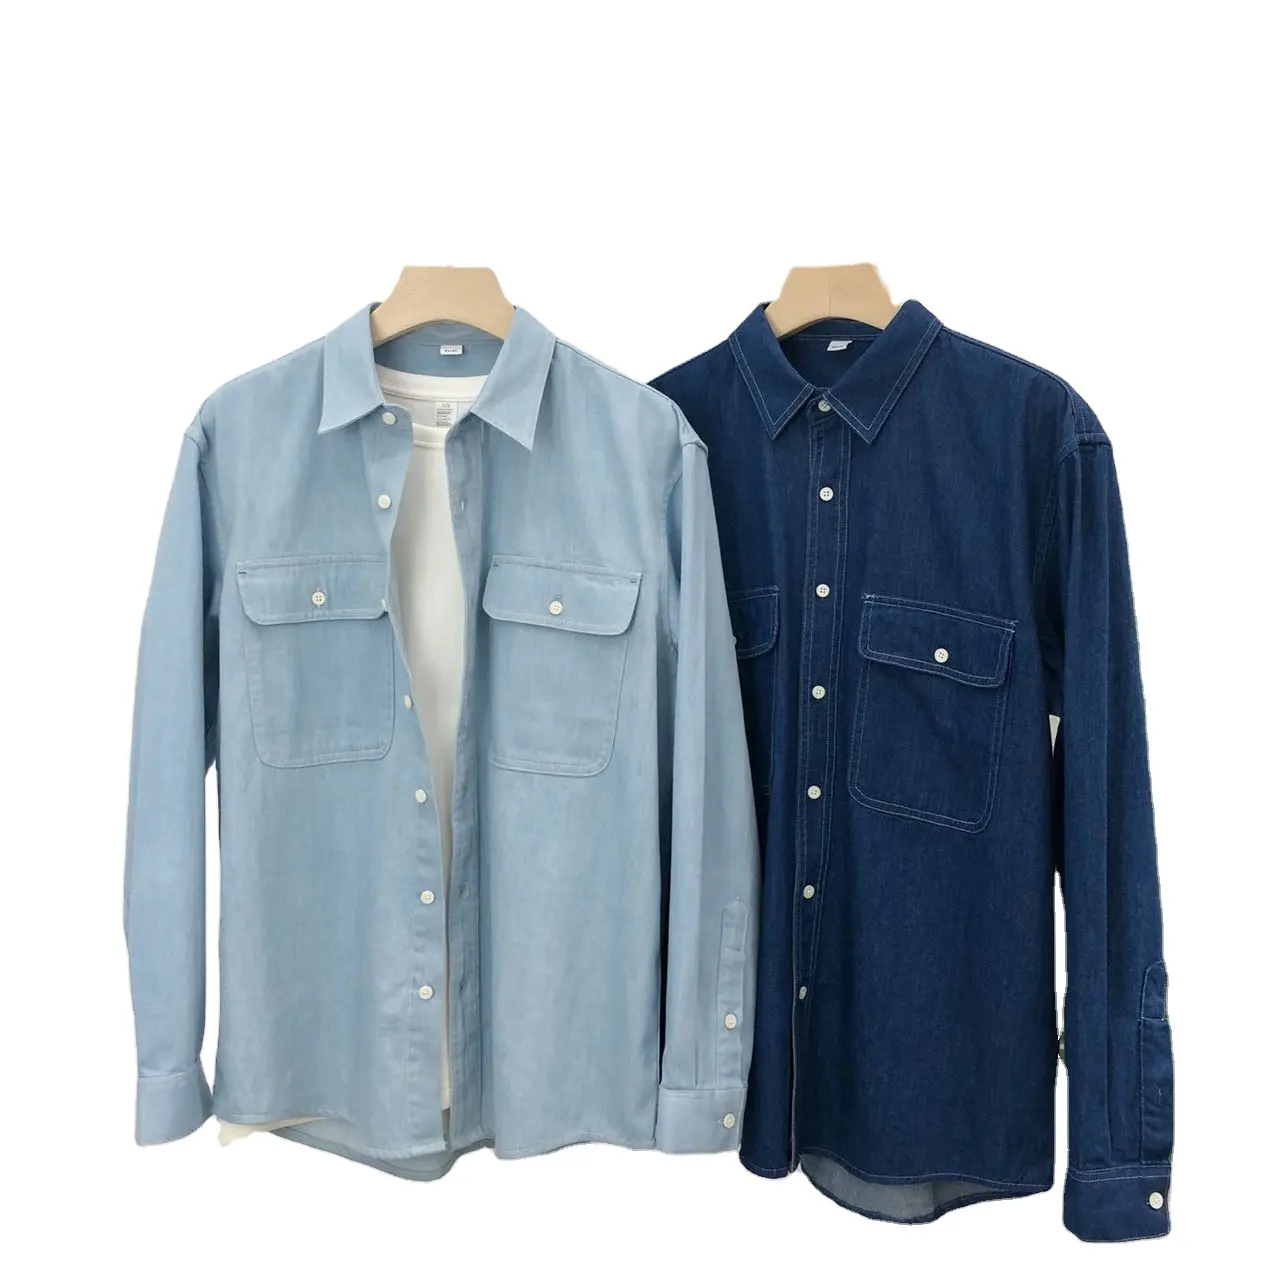 NengMeng Camisa jeans solta para homens, camisa japonesa pesada de cor vintage, linha de bolso duplo, com ferramentas e bolsos